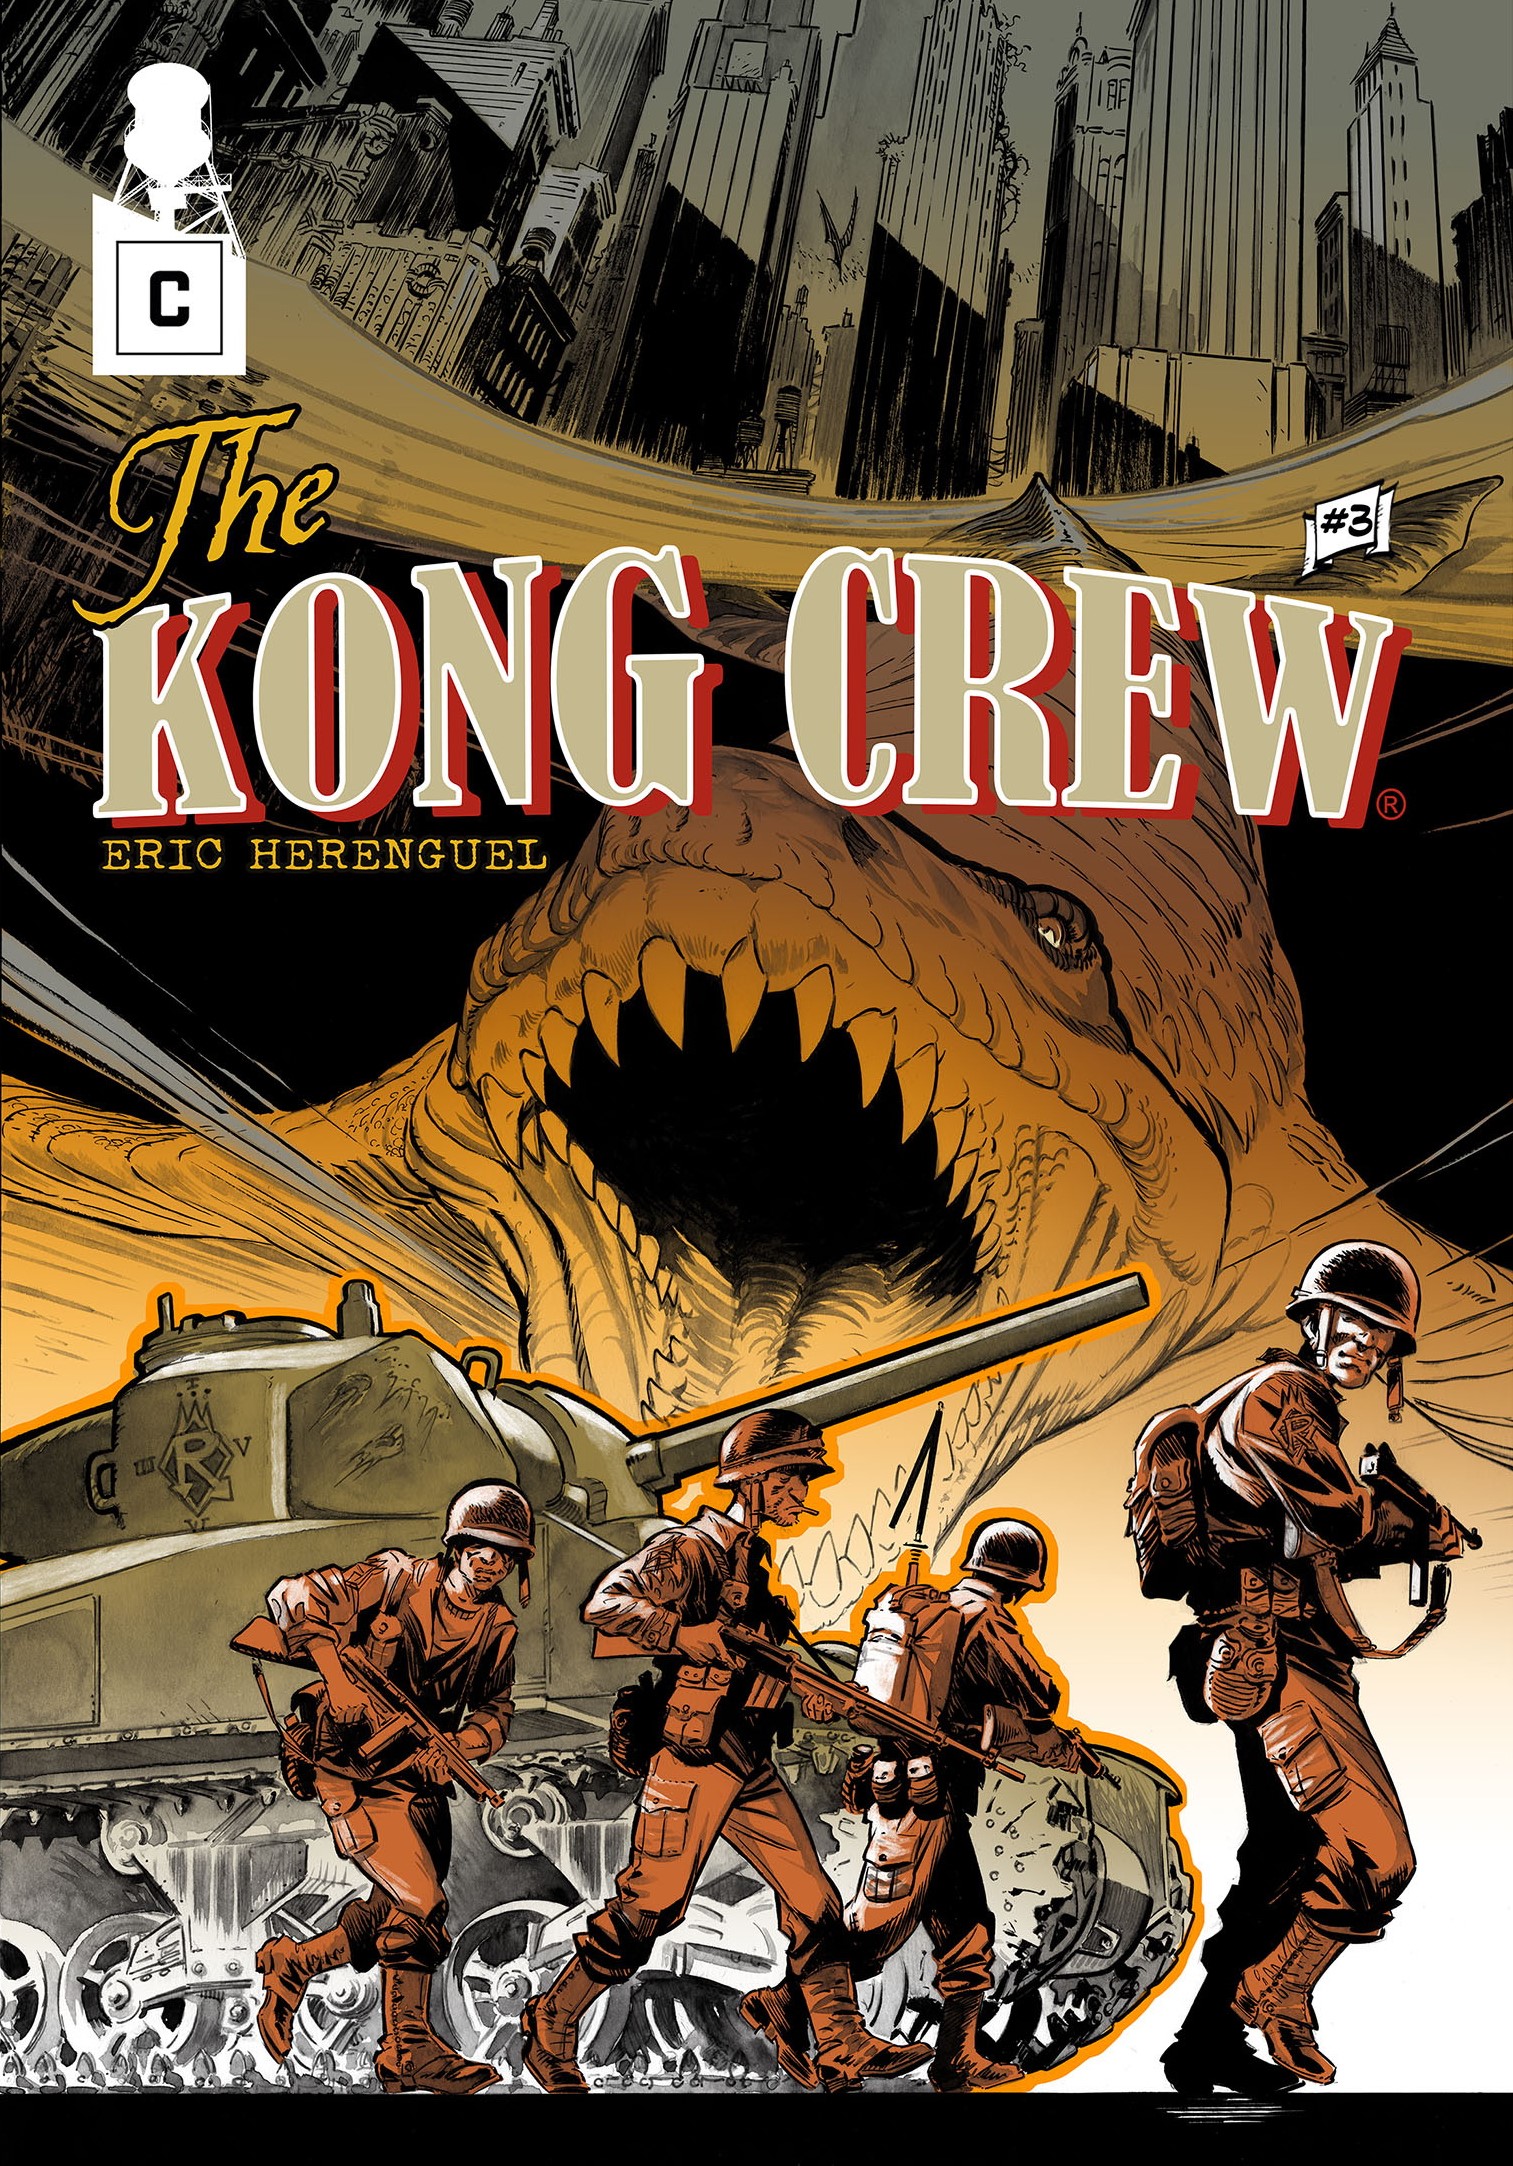 Couverture de Kong Crew 3 d'Eric Herenguel.